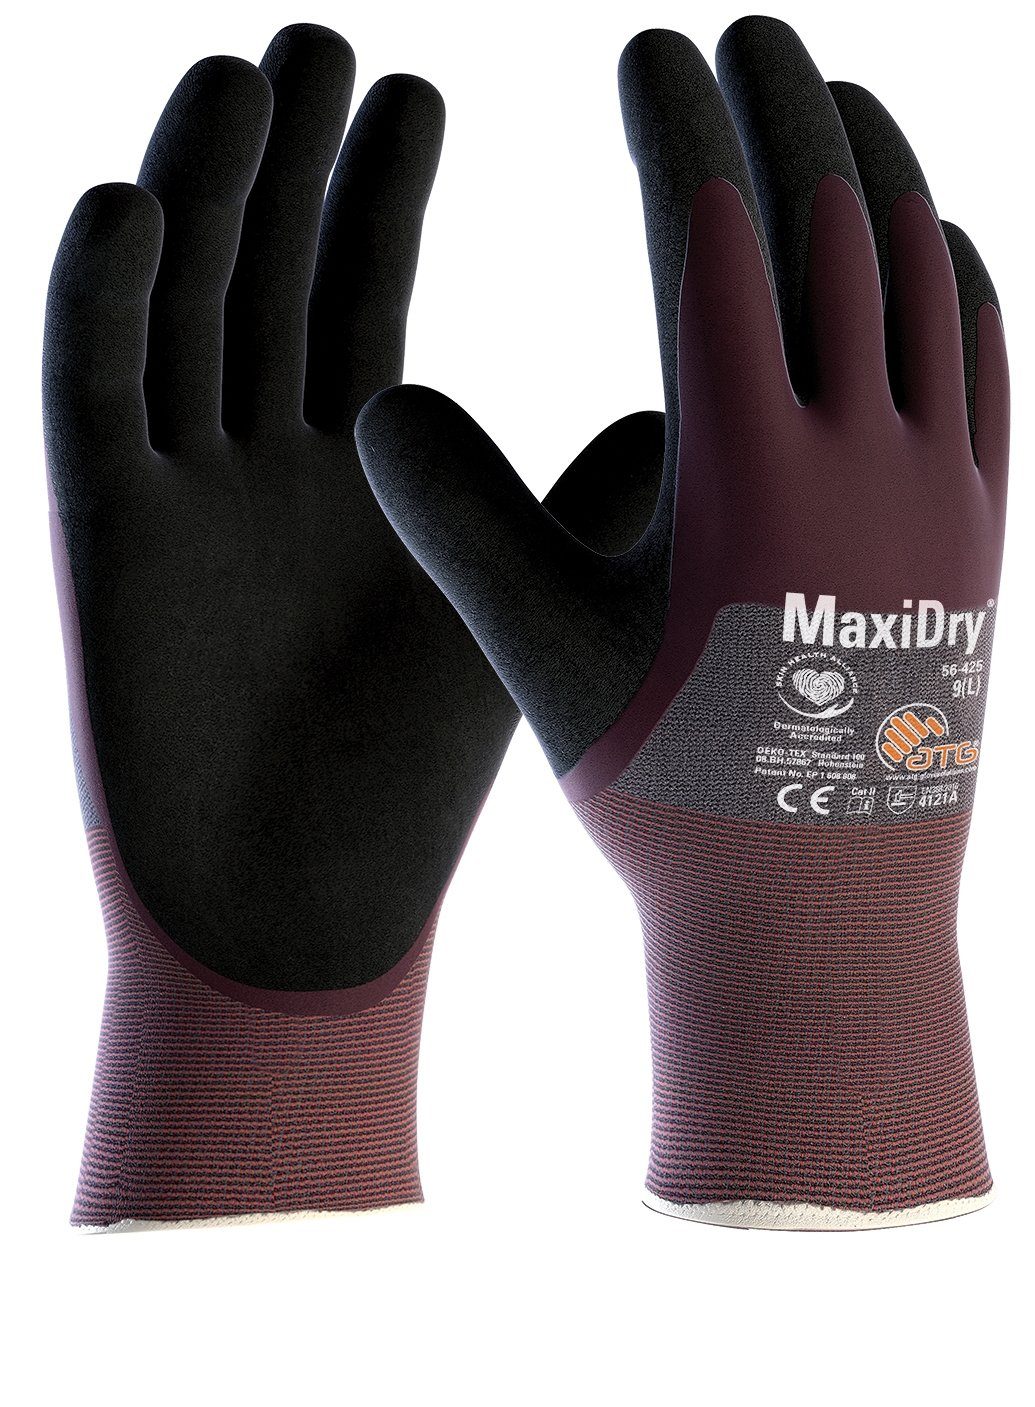 ATG Nitril-Handschuhe "MaxiDry®", 3/4 beschichtet (56-425) 12 Paar